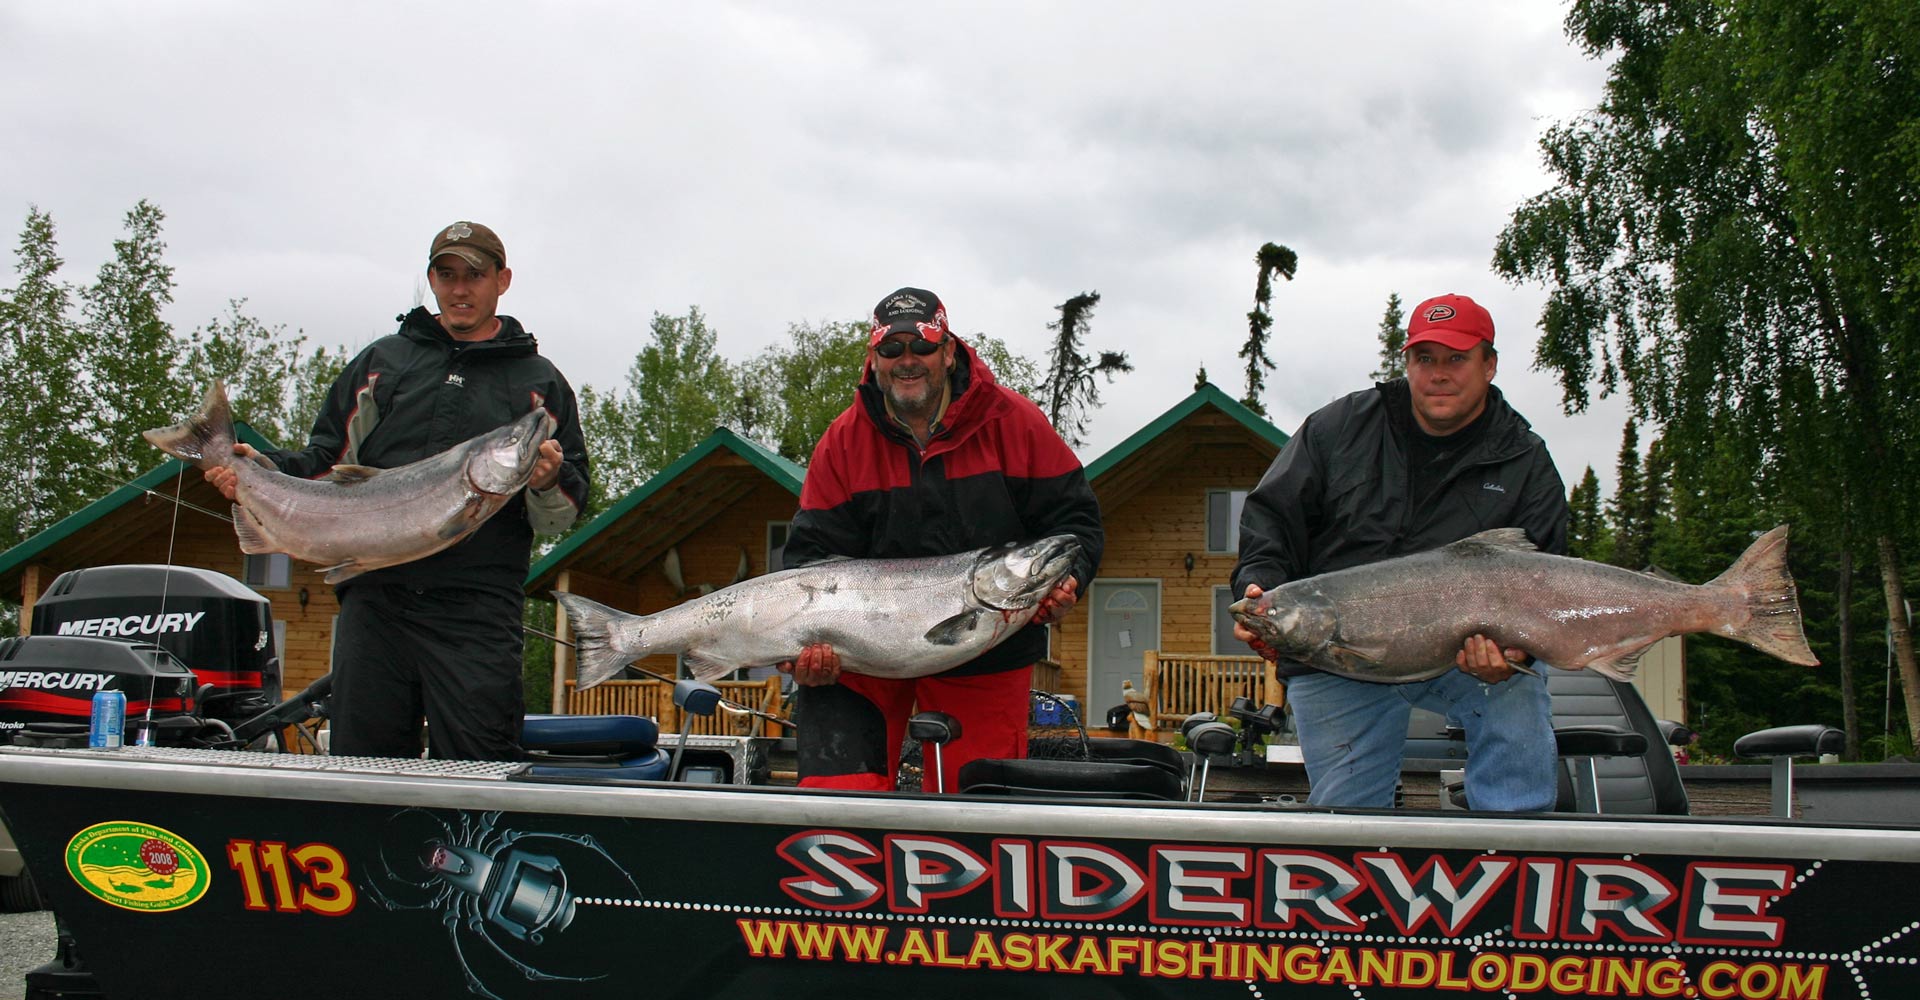 Alaska Salmon Fishing Trips with Alaska Fishing Guide Tyland Vanlier